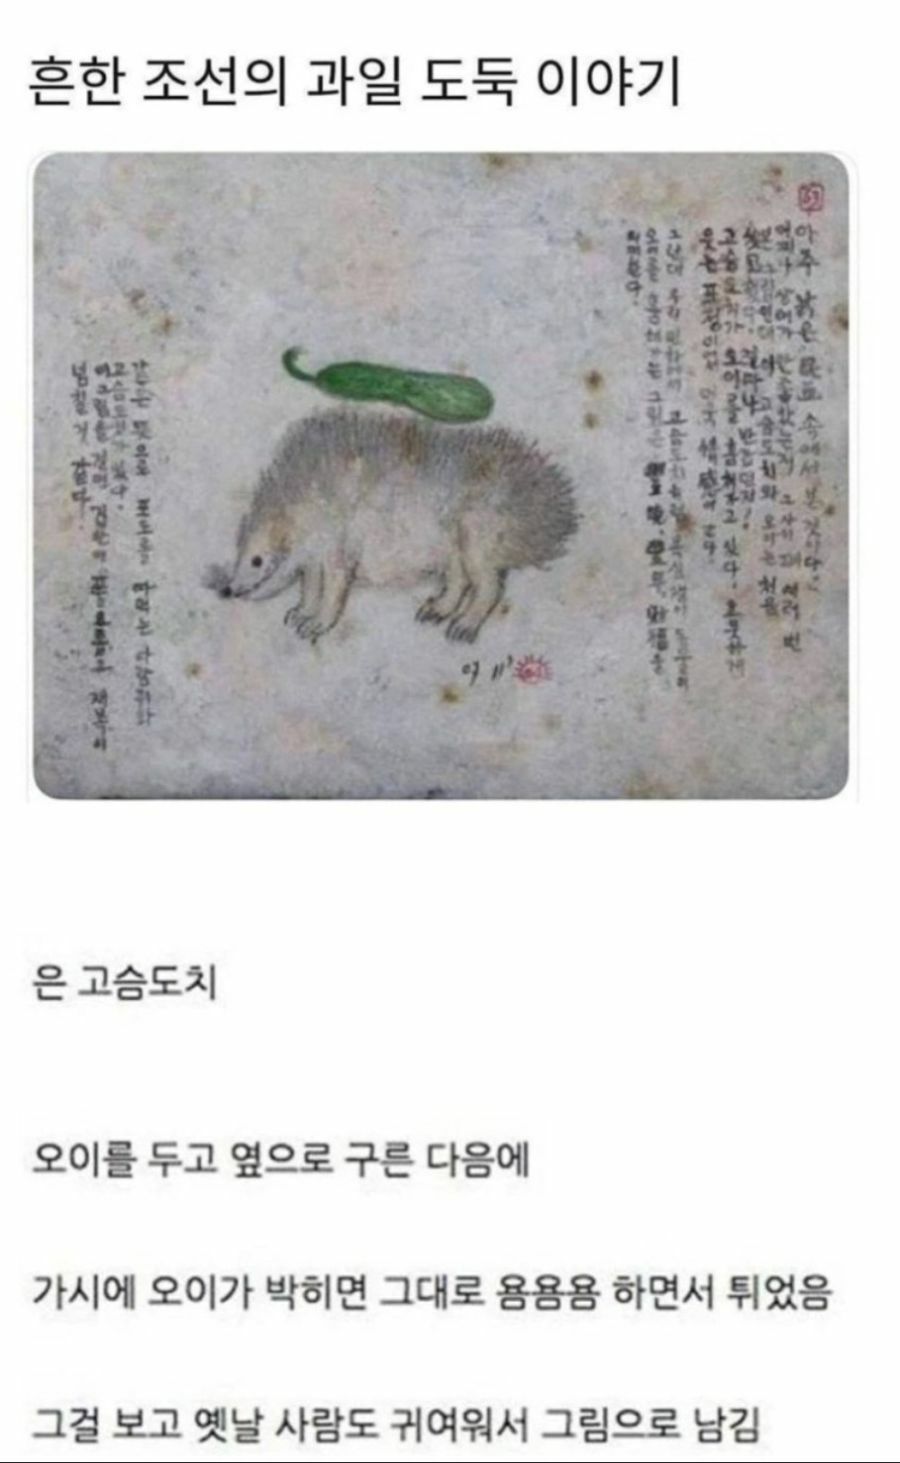 옛날 조선시대때 고슴도치가 과일을 훔쳐갔데